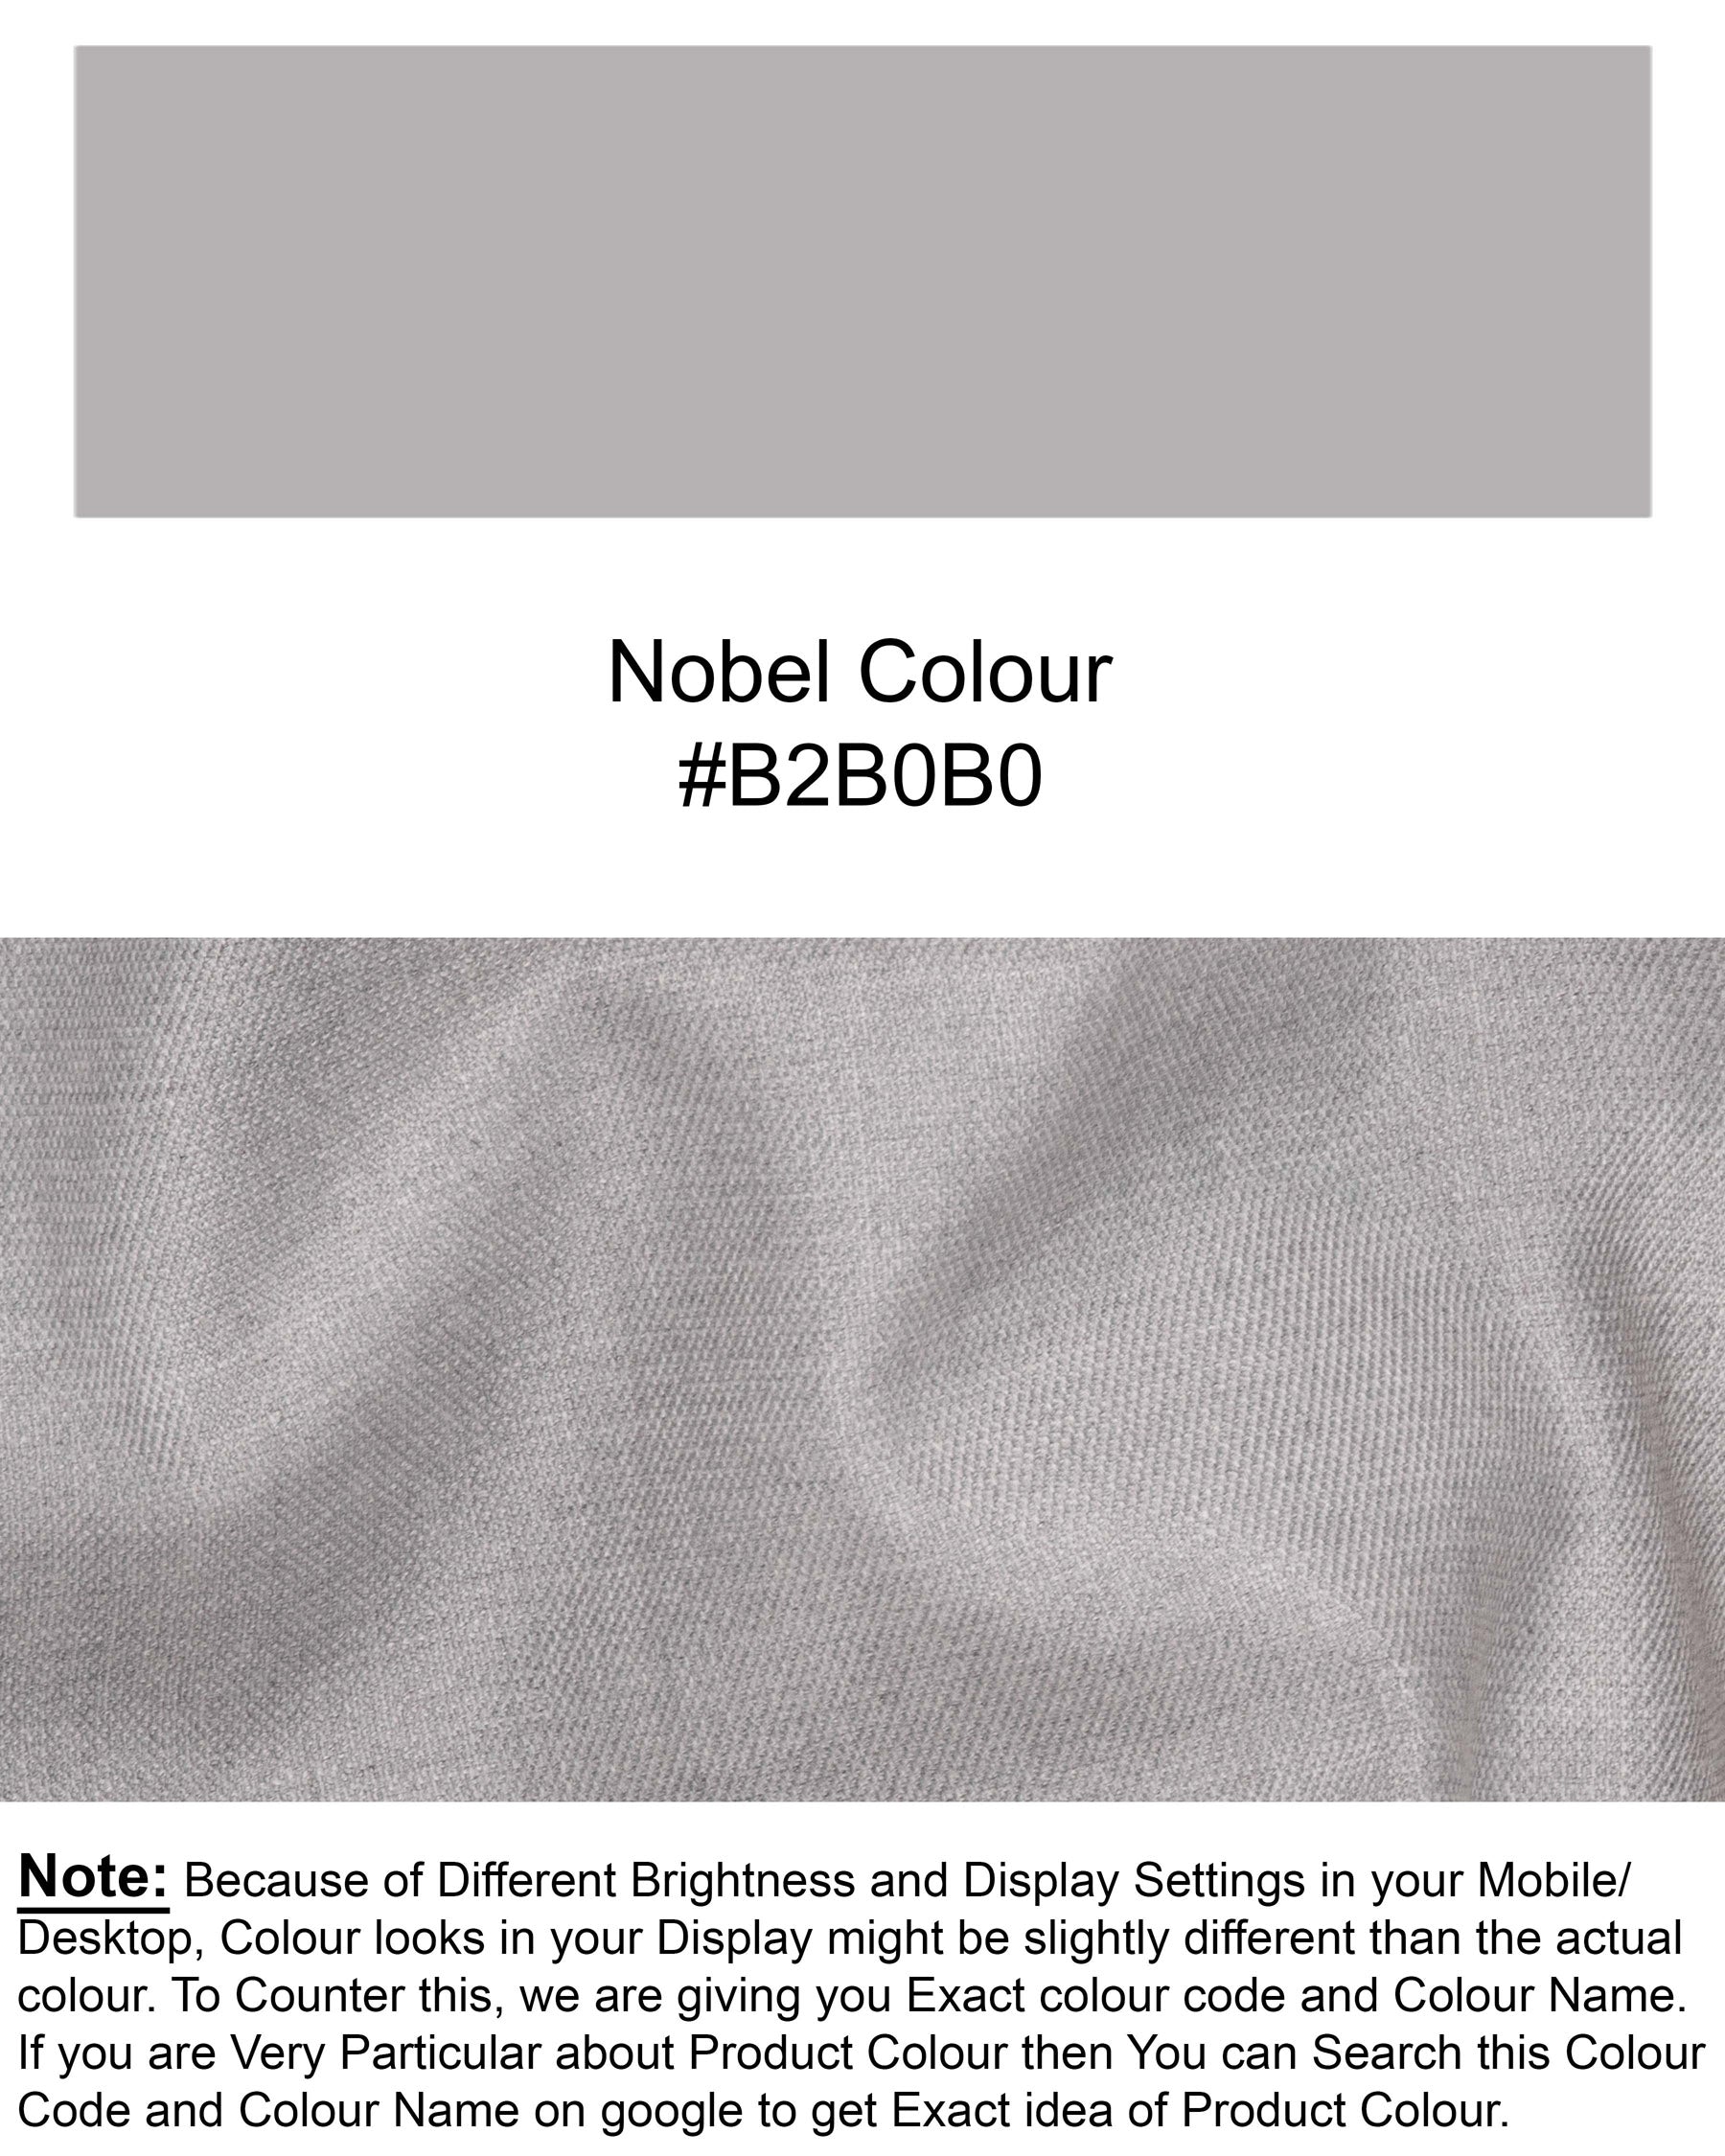 Nobel Gray Single Breasted Blazer BL1837-SB-36, BL1837-SB-38, BL1837-SB-40, BL1837-SB-42, BL1837-SB-44, BL1837-SB-46, BL1837-SB-48, BL1837-SB-50, BL1837-SB-52, BL1837-SB-54, BL1837-SB-56, BL1837-SB-58, BL1837-SB-60